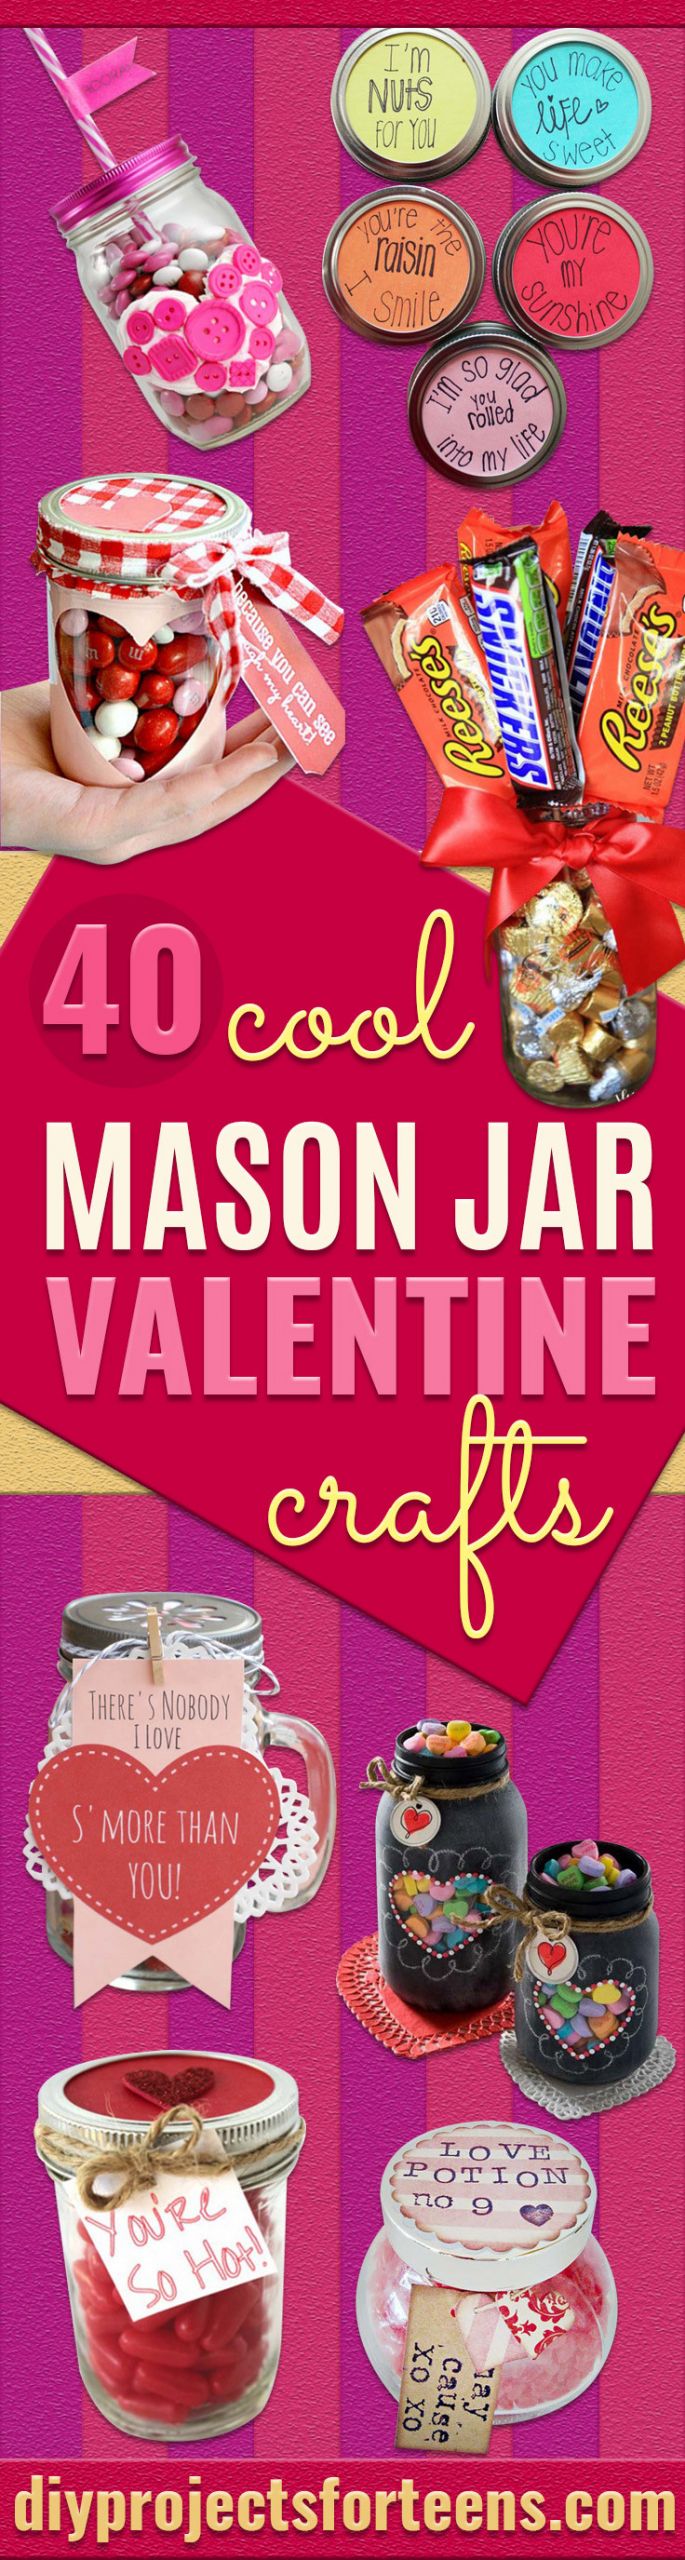 Valentines Gift Ideas For Teens
 34 Mason Jar Valentine Crafts